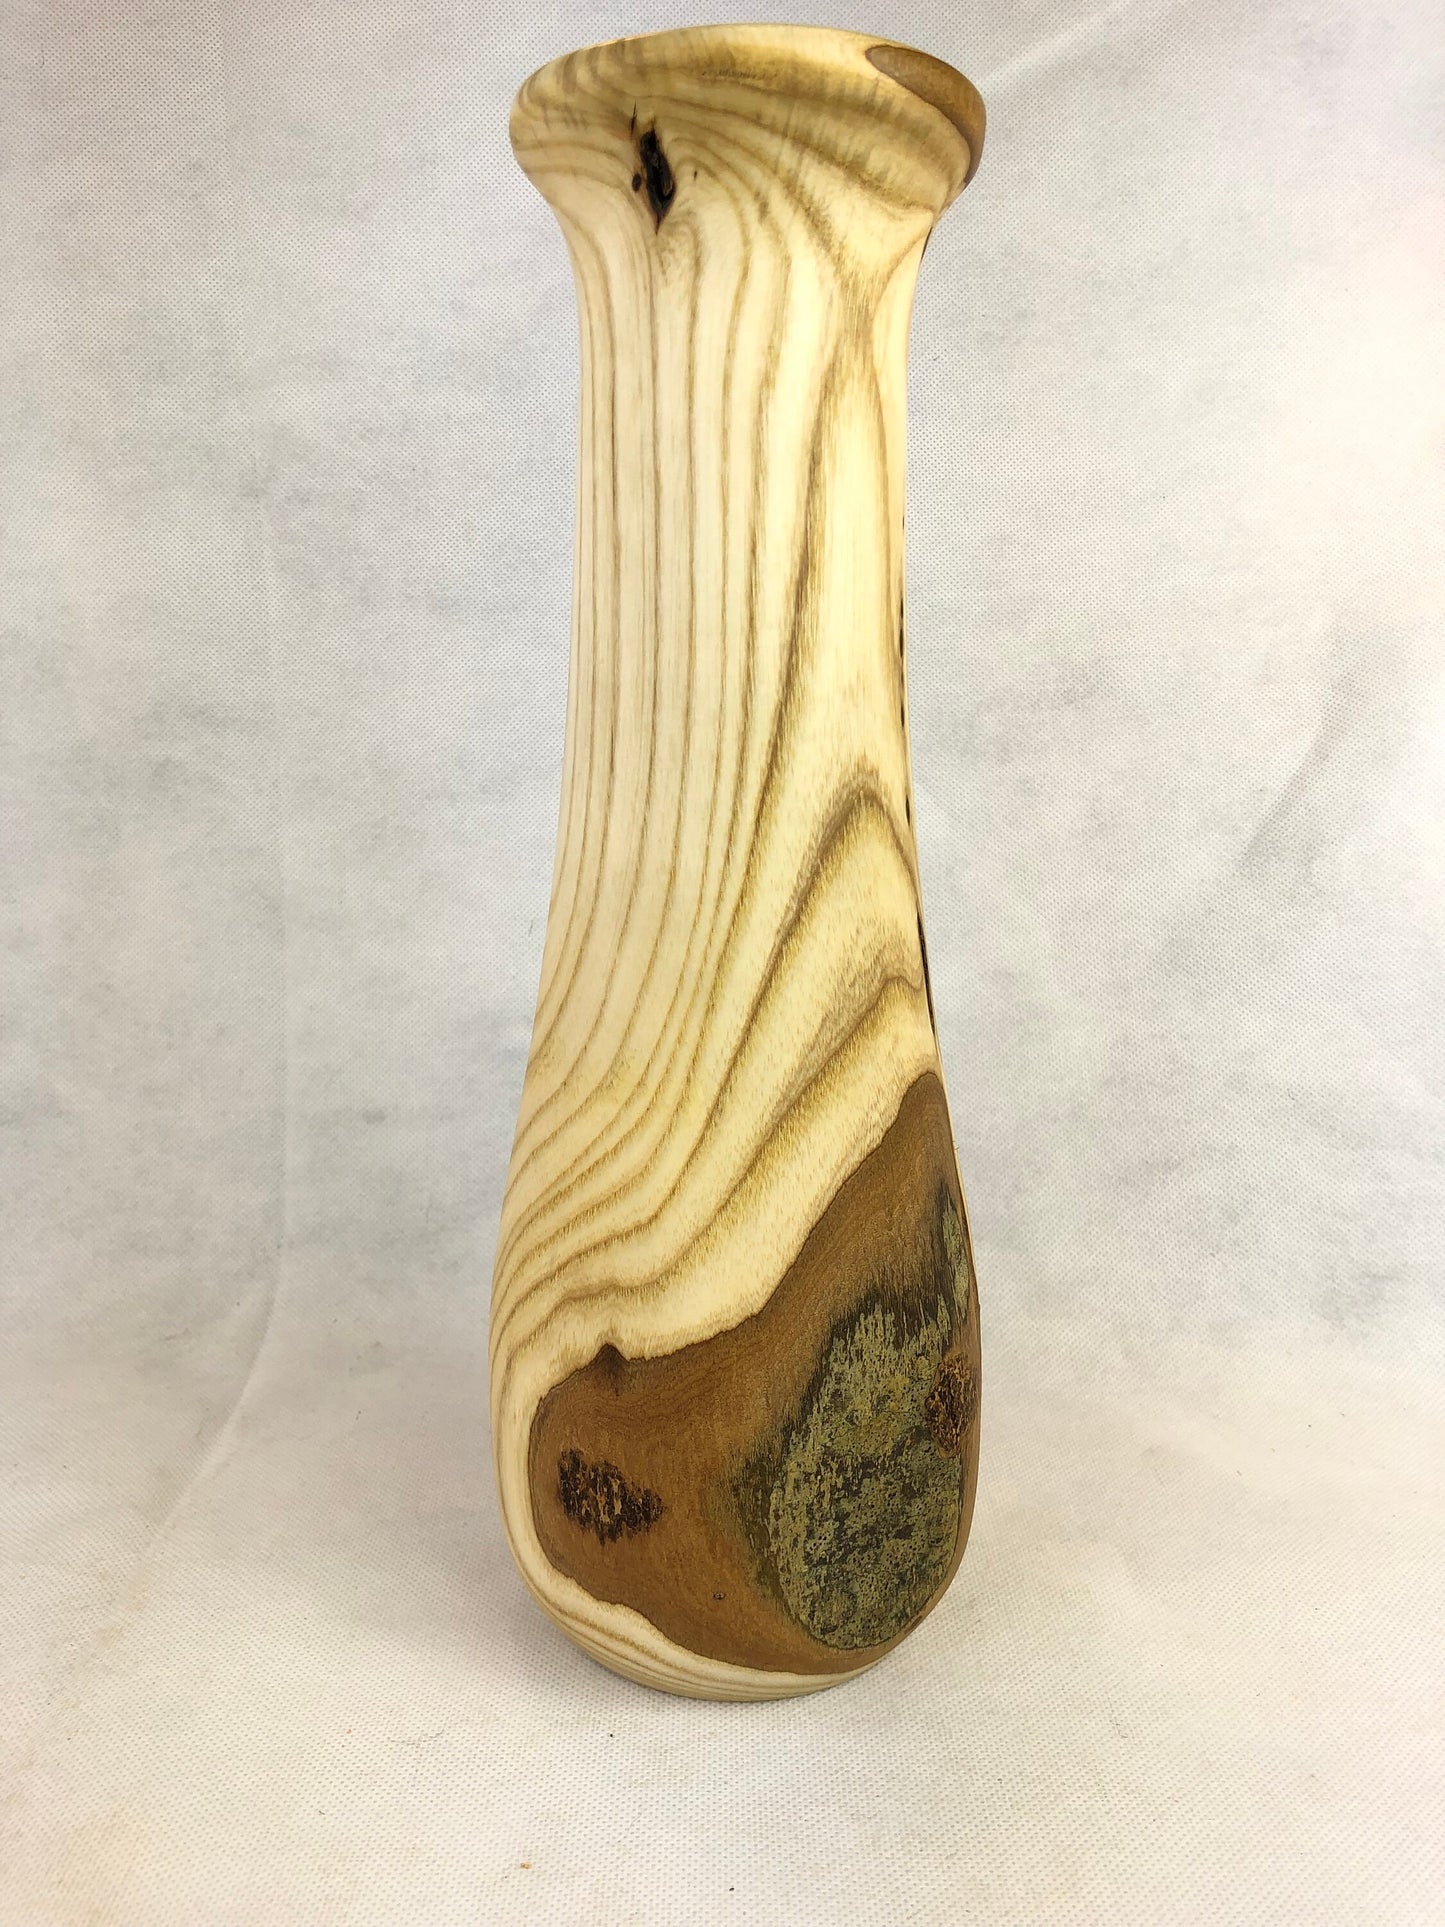 Carbis Bay Cankered Ash no. 1 Wooden Vase